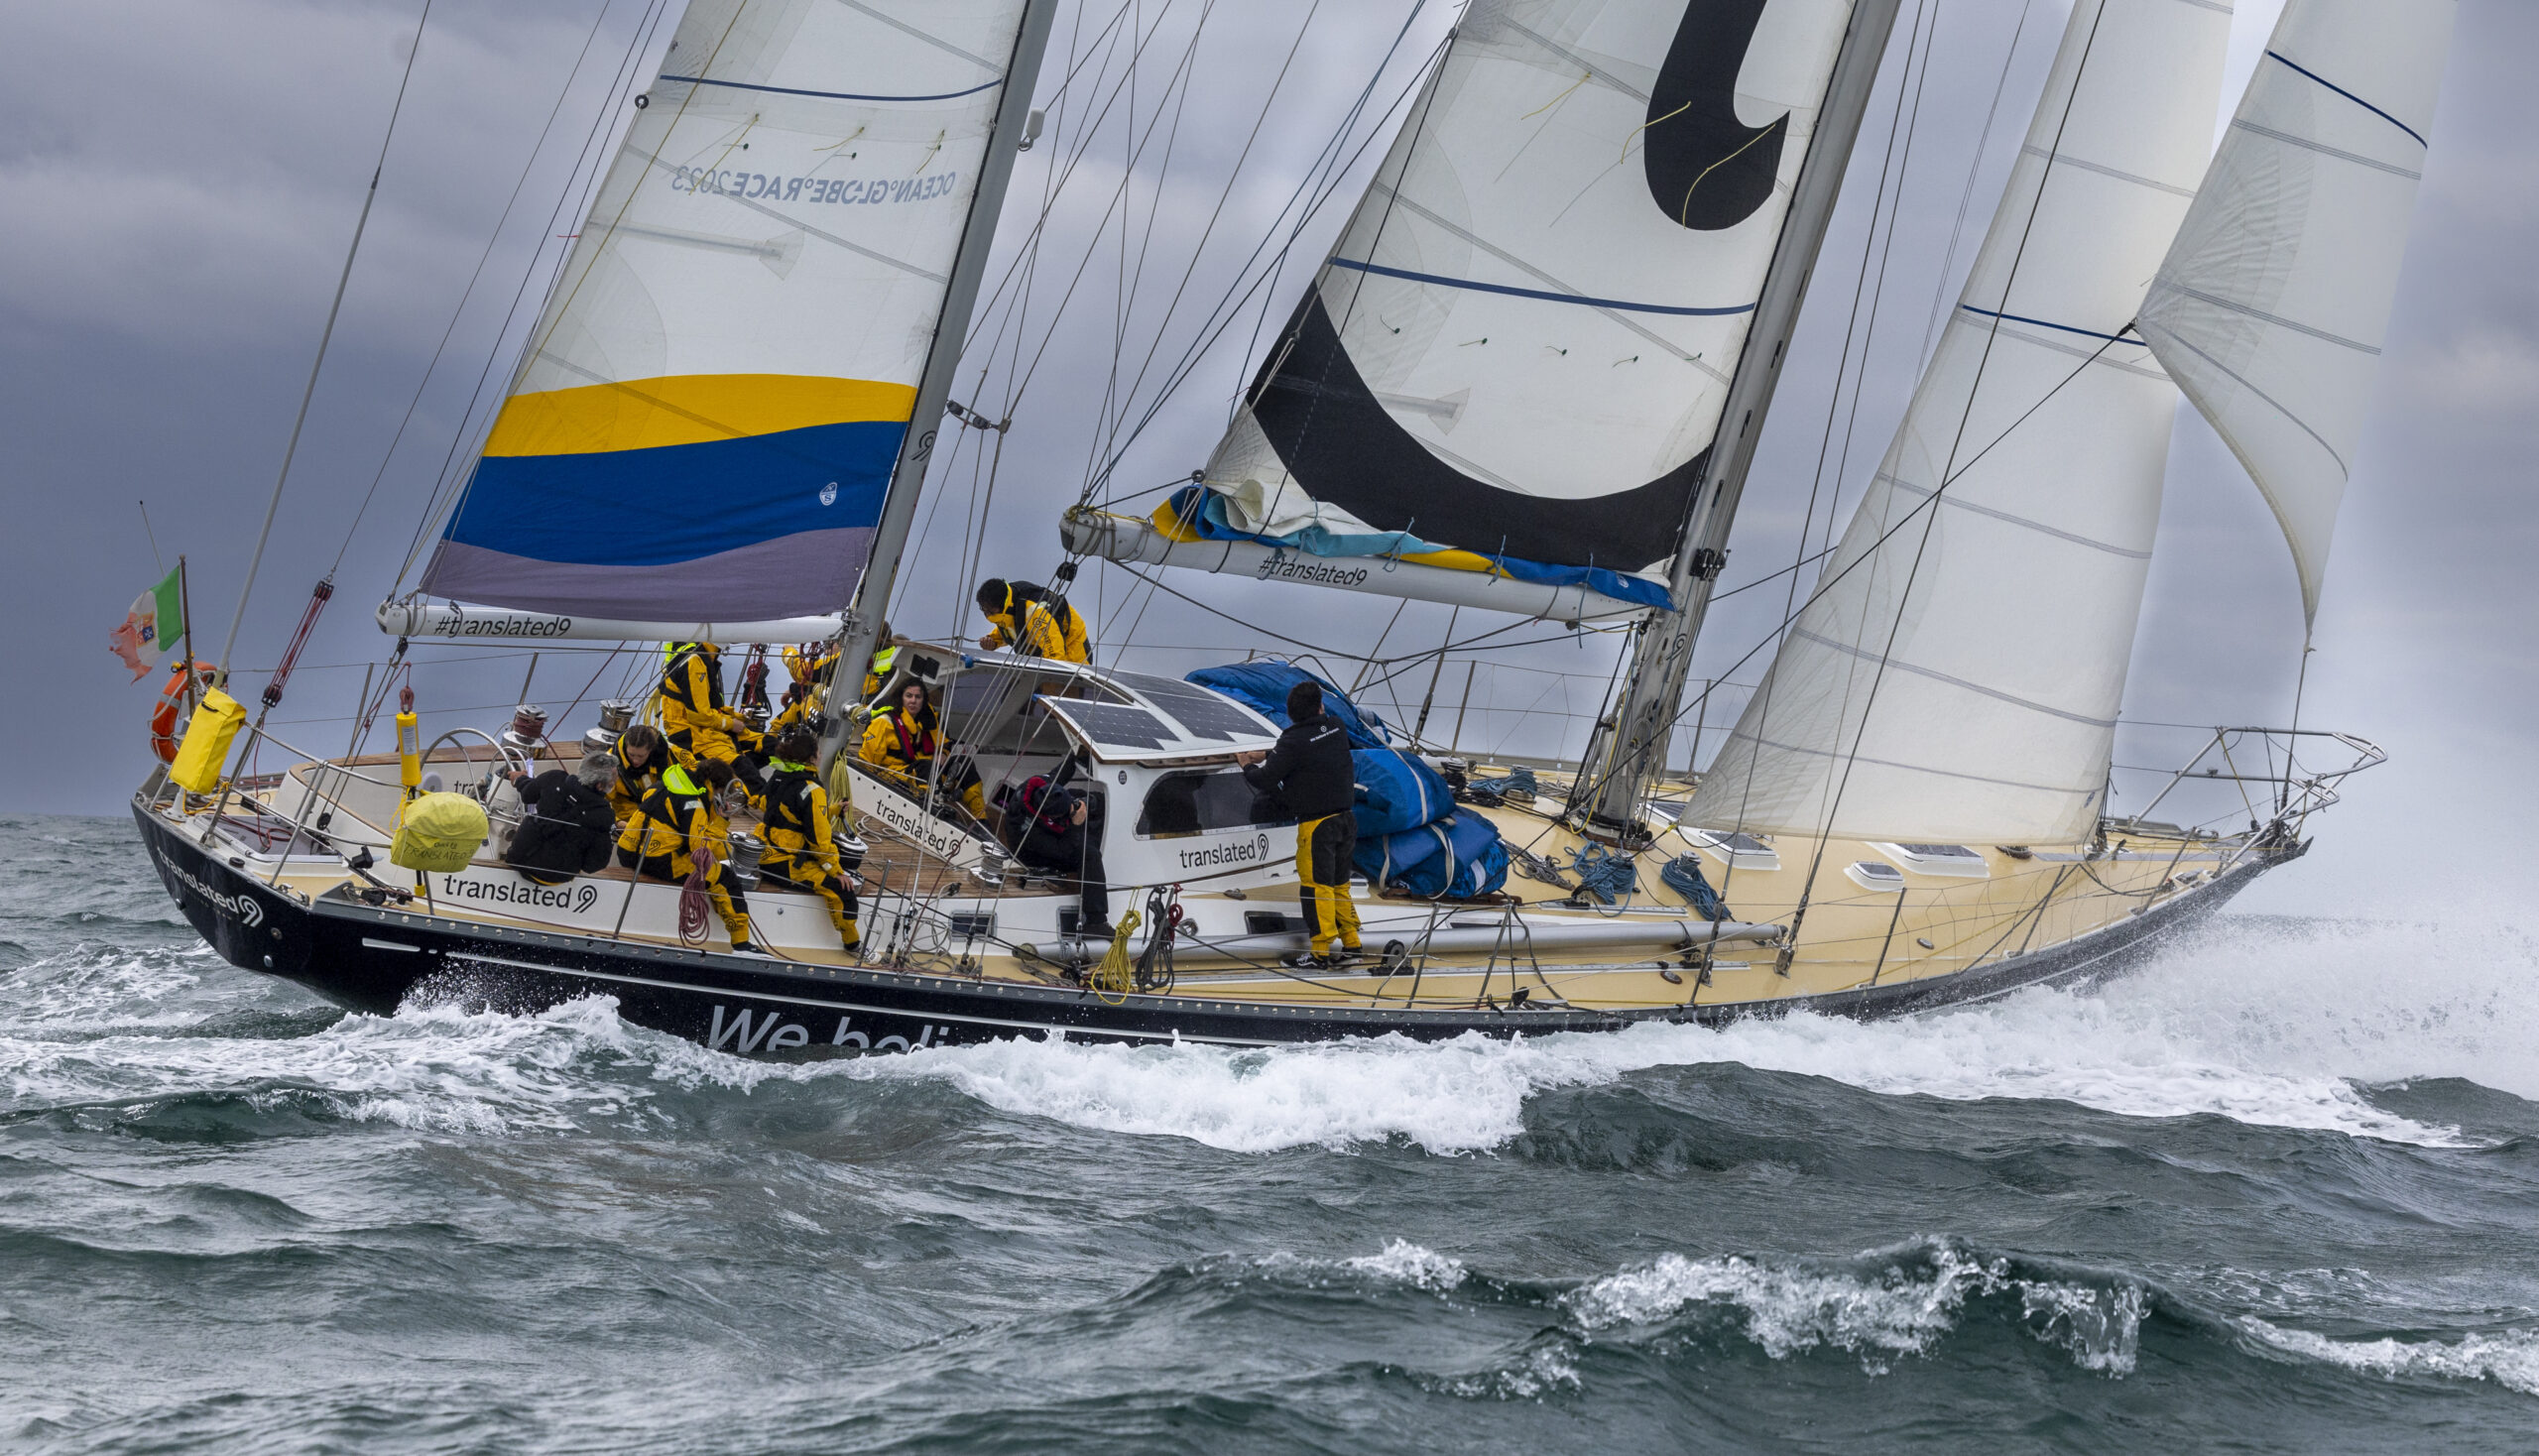 Ocean Globe Race: Translated 9 al via della quarta tappa con Nico Malingri nuovo co-skipper